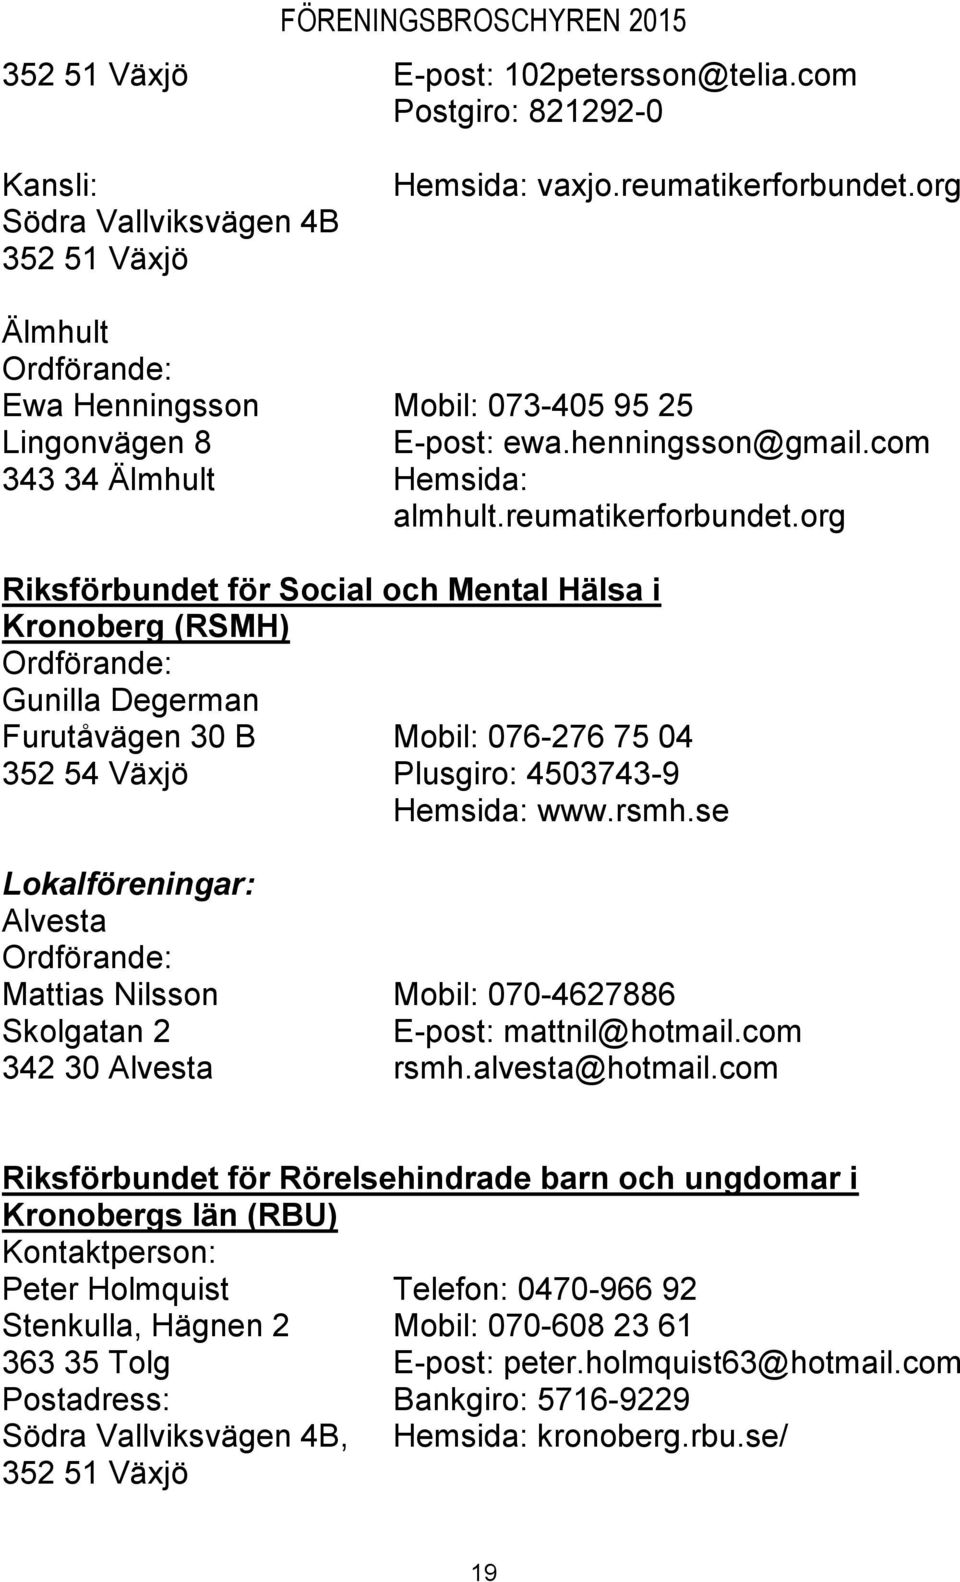 org Riksförbundet för Social och Mental Hälsa i Kronoberg (RSMH) Gunilla Degerman Furutåvägen 30 B Mobil: 076-276 75 04 352 54 Växjö Plusgiro: 4503743-9 Hemsida: www.rsmh.